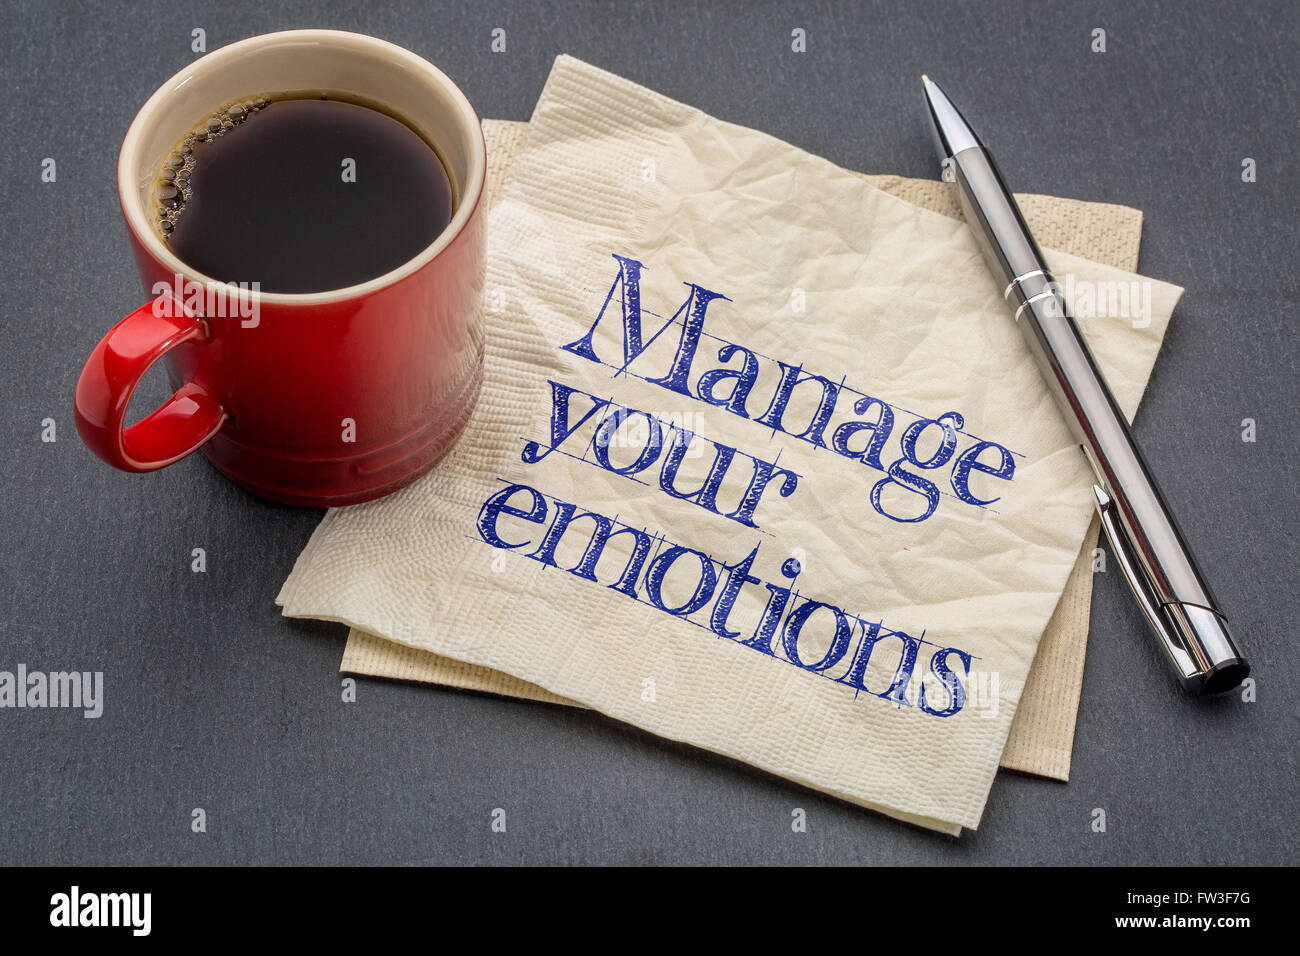 Gérer vos émotions conseils ou rappel - main sur une serviette avec tasse de café contre l'arrière-plan gris ardoise Banque D'Images